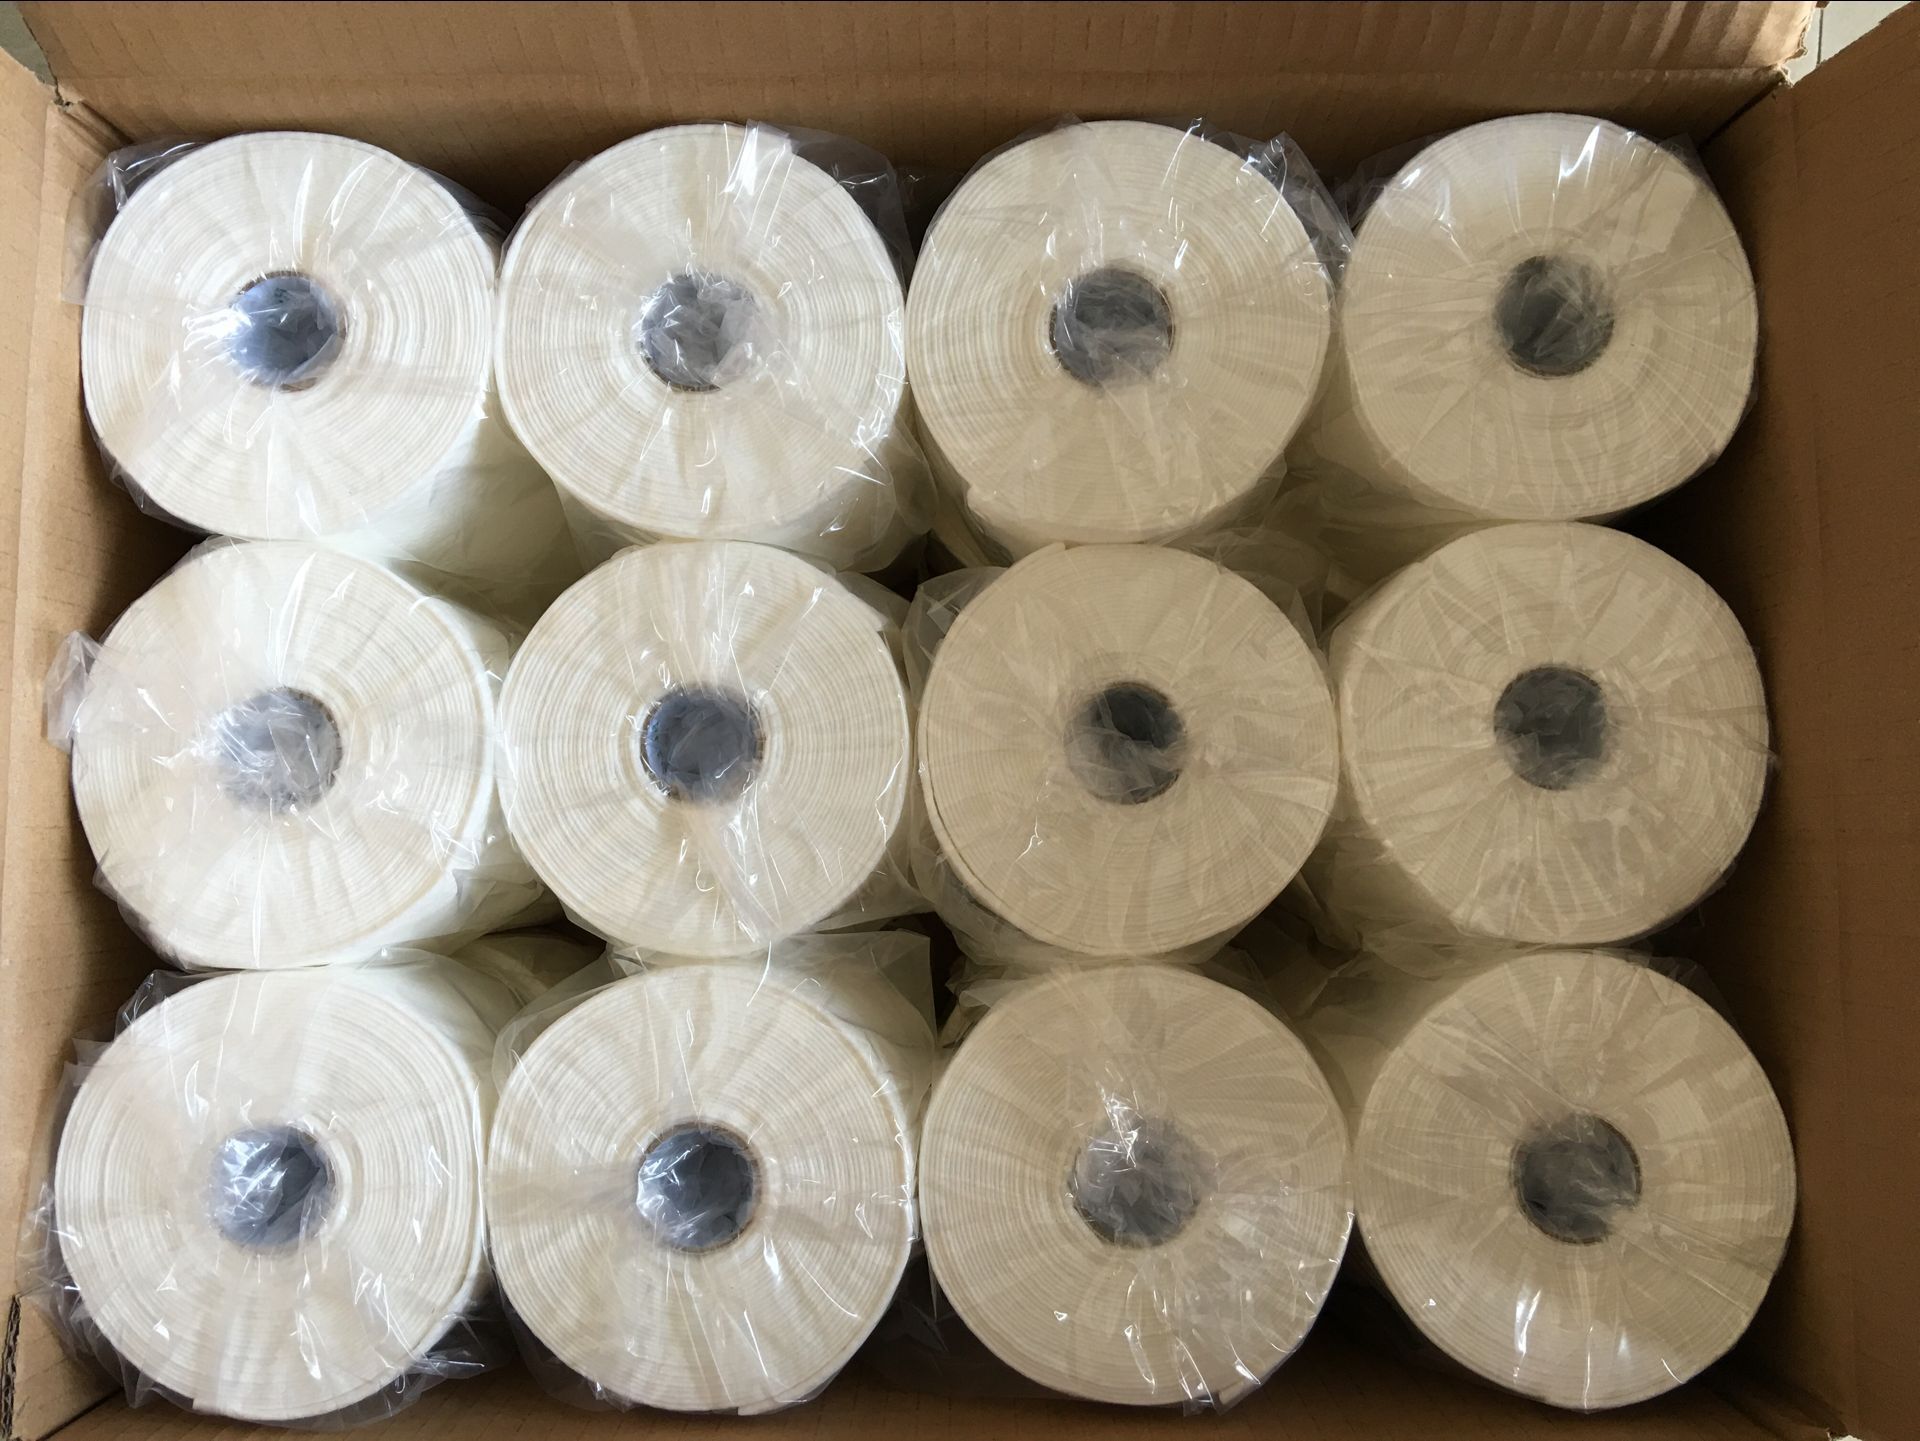 浙江湖州同辉机械专业生产无纺布制品设备、卷式棉柔巾机器设备。